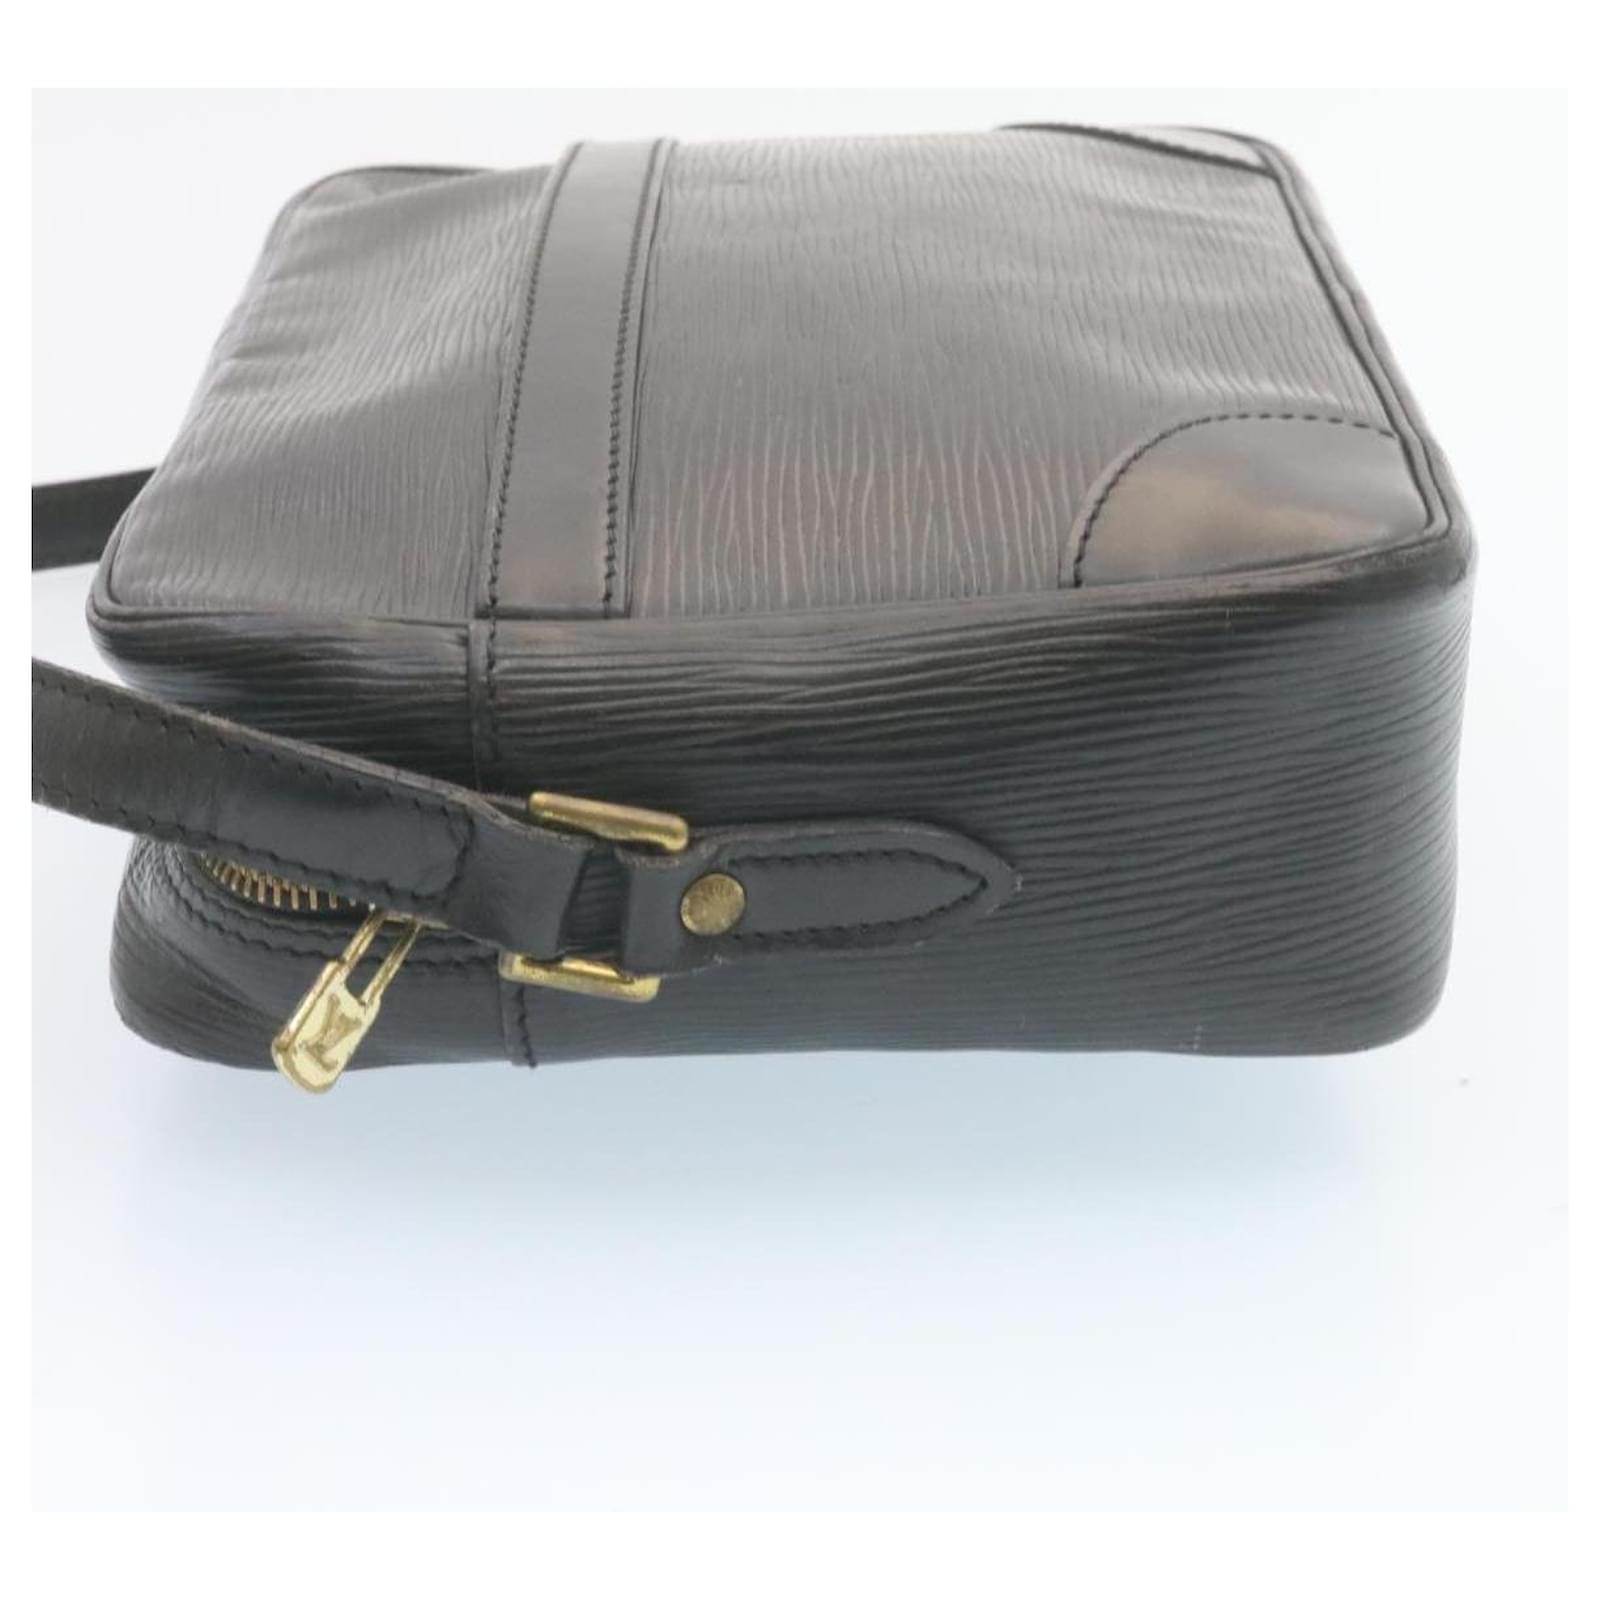 Auth Louis Vuitton Epi Trocadero M52312 Women's Shoulder Bag Noir